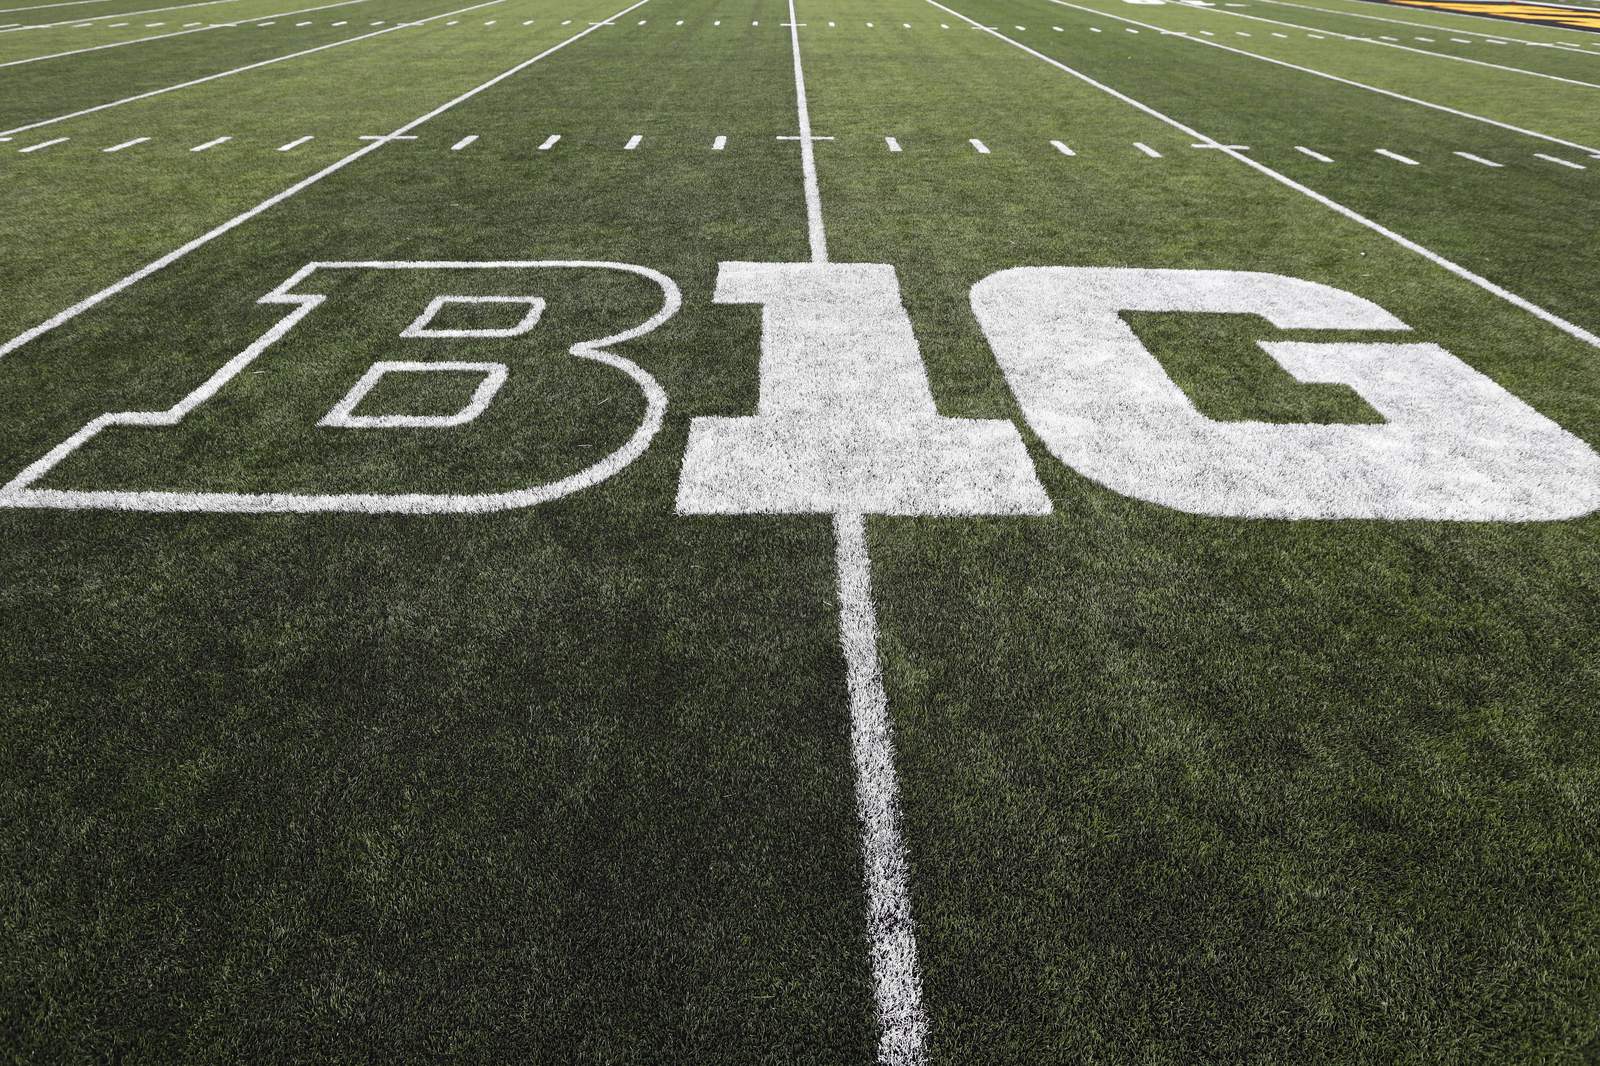 Report: Big Ten presidents vote to postpone college football season, hope to play in spring